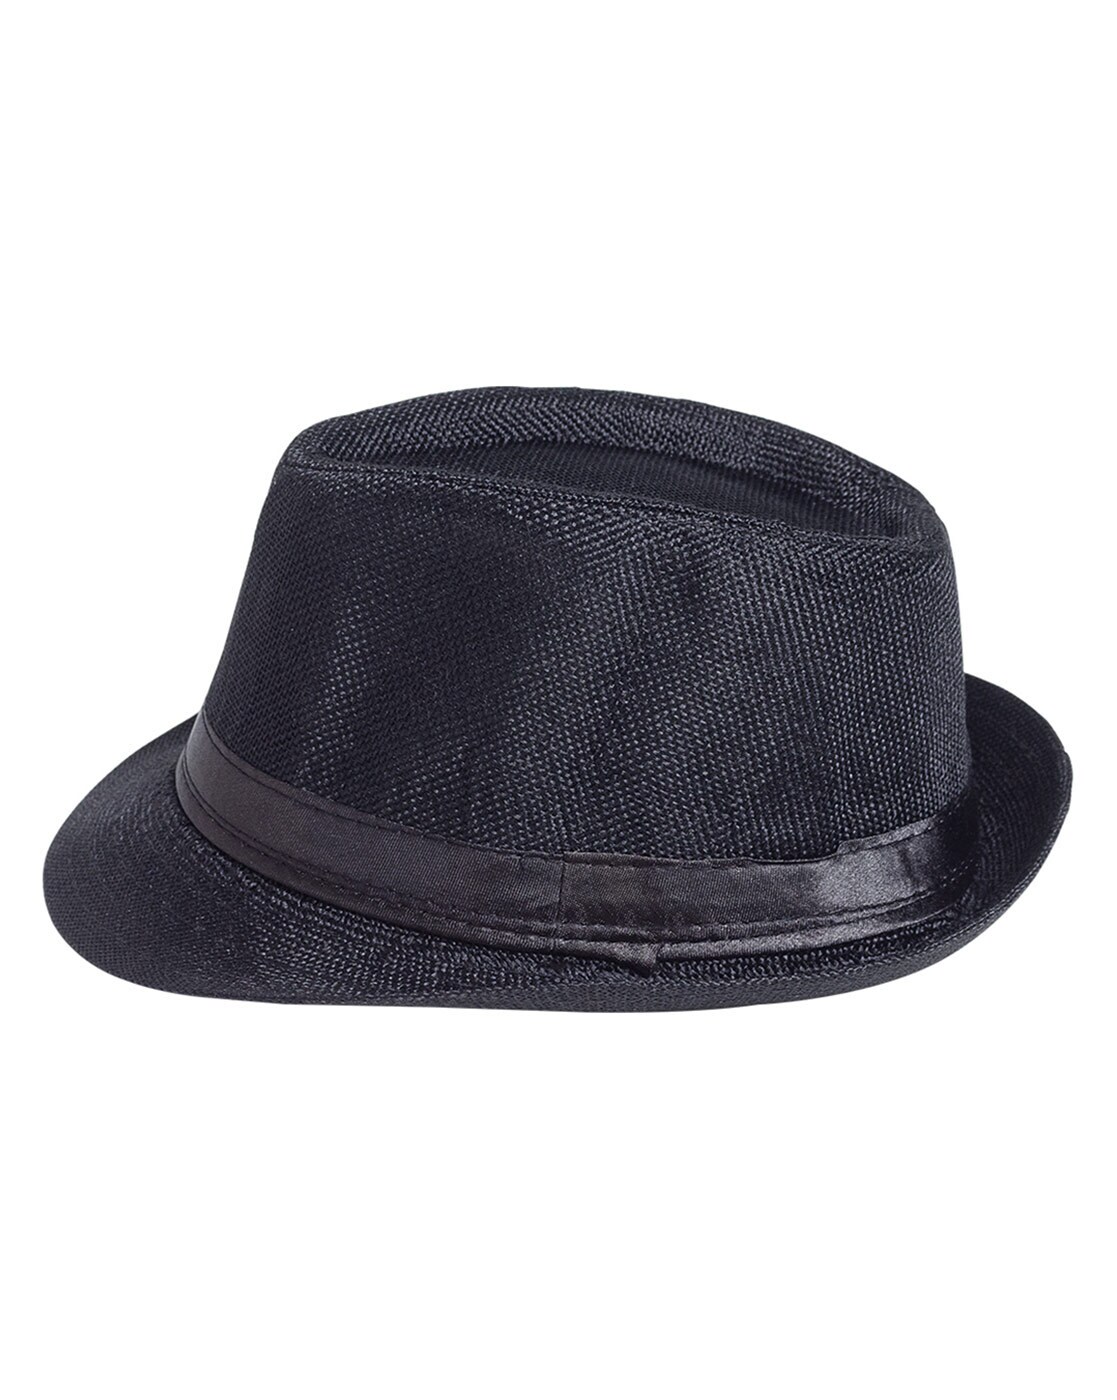 Buy Black Caps & Hats for Men by Golden Peacock Online